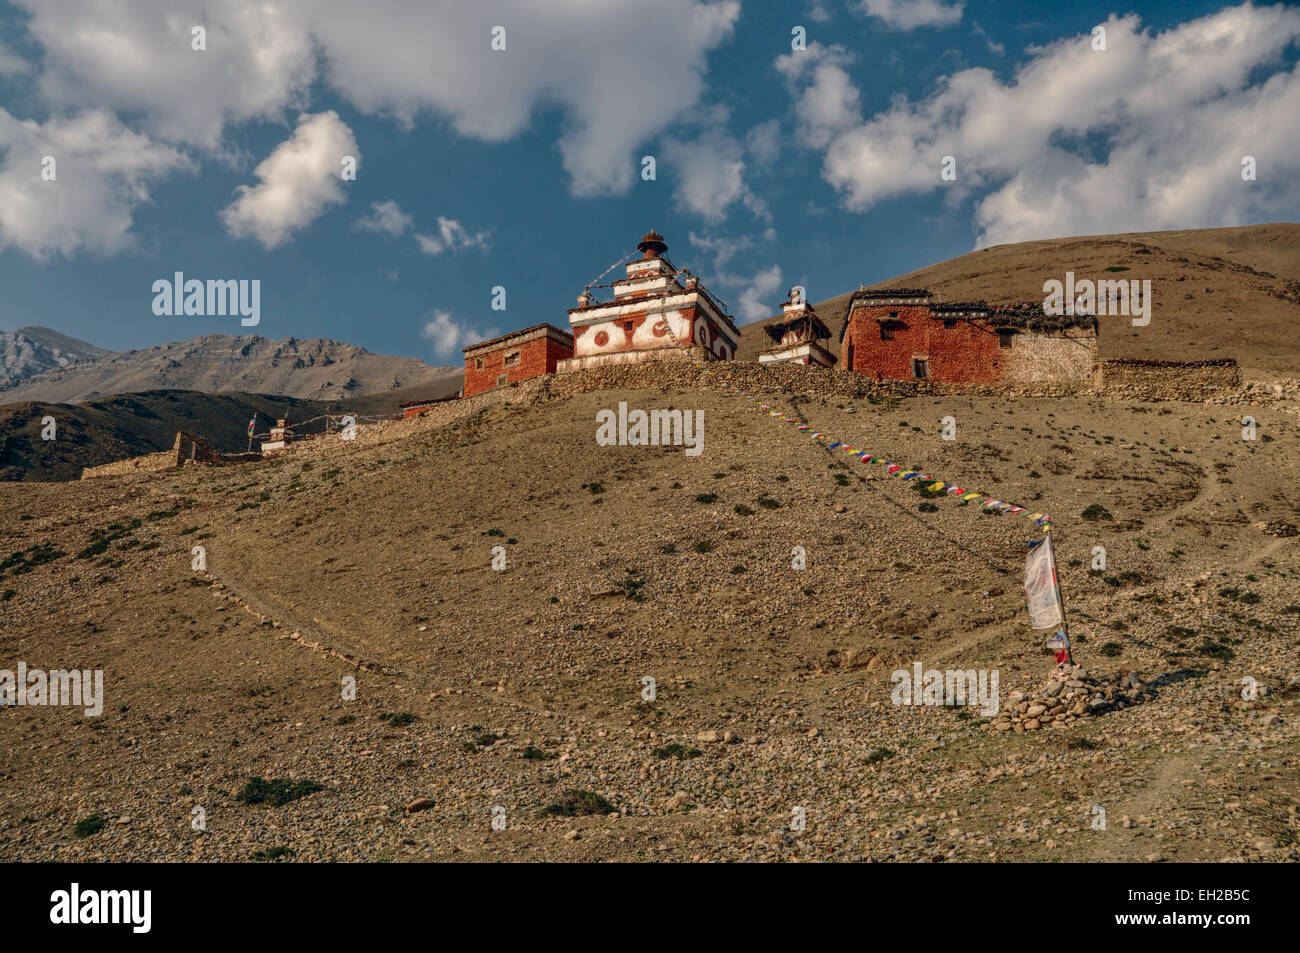 Scenic ancien sanctuaire dans les montagnes de l'Himalaya au Népal Banque D'Images